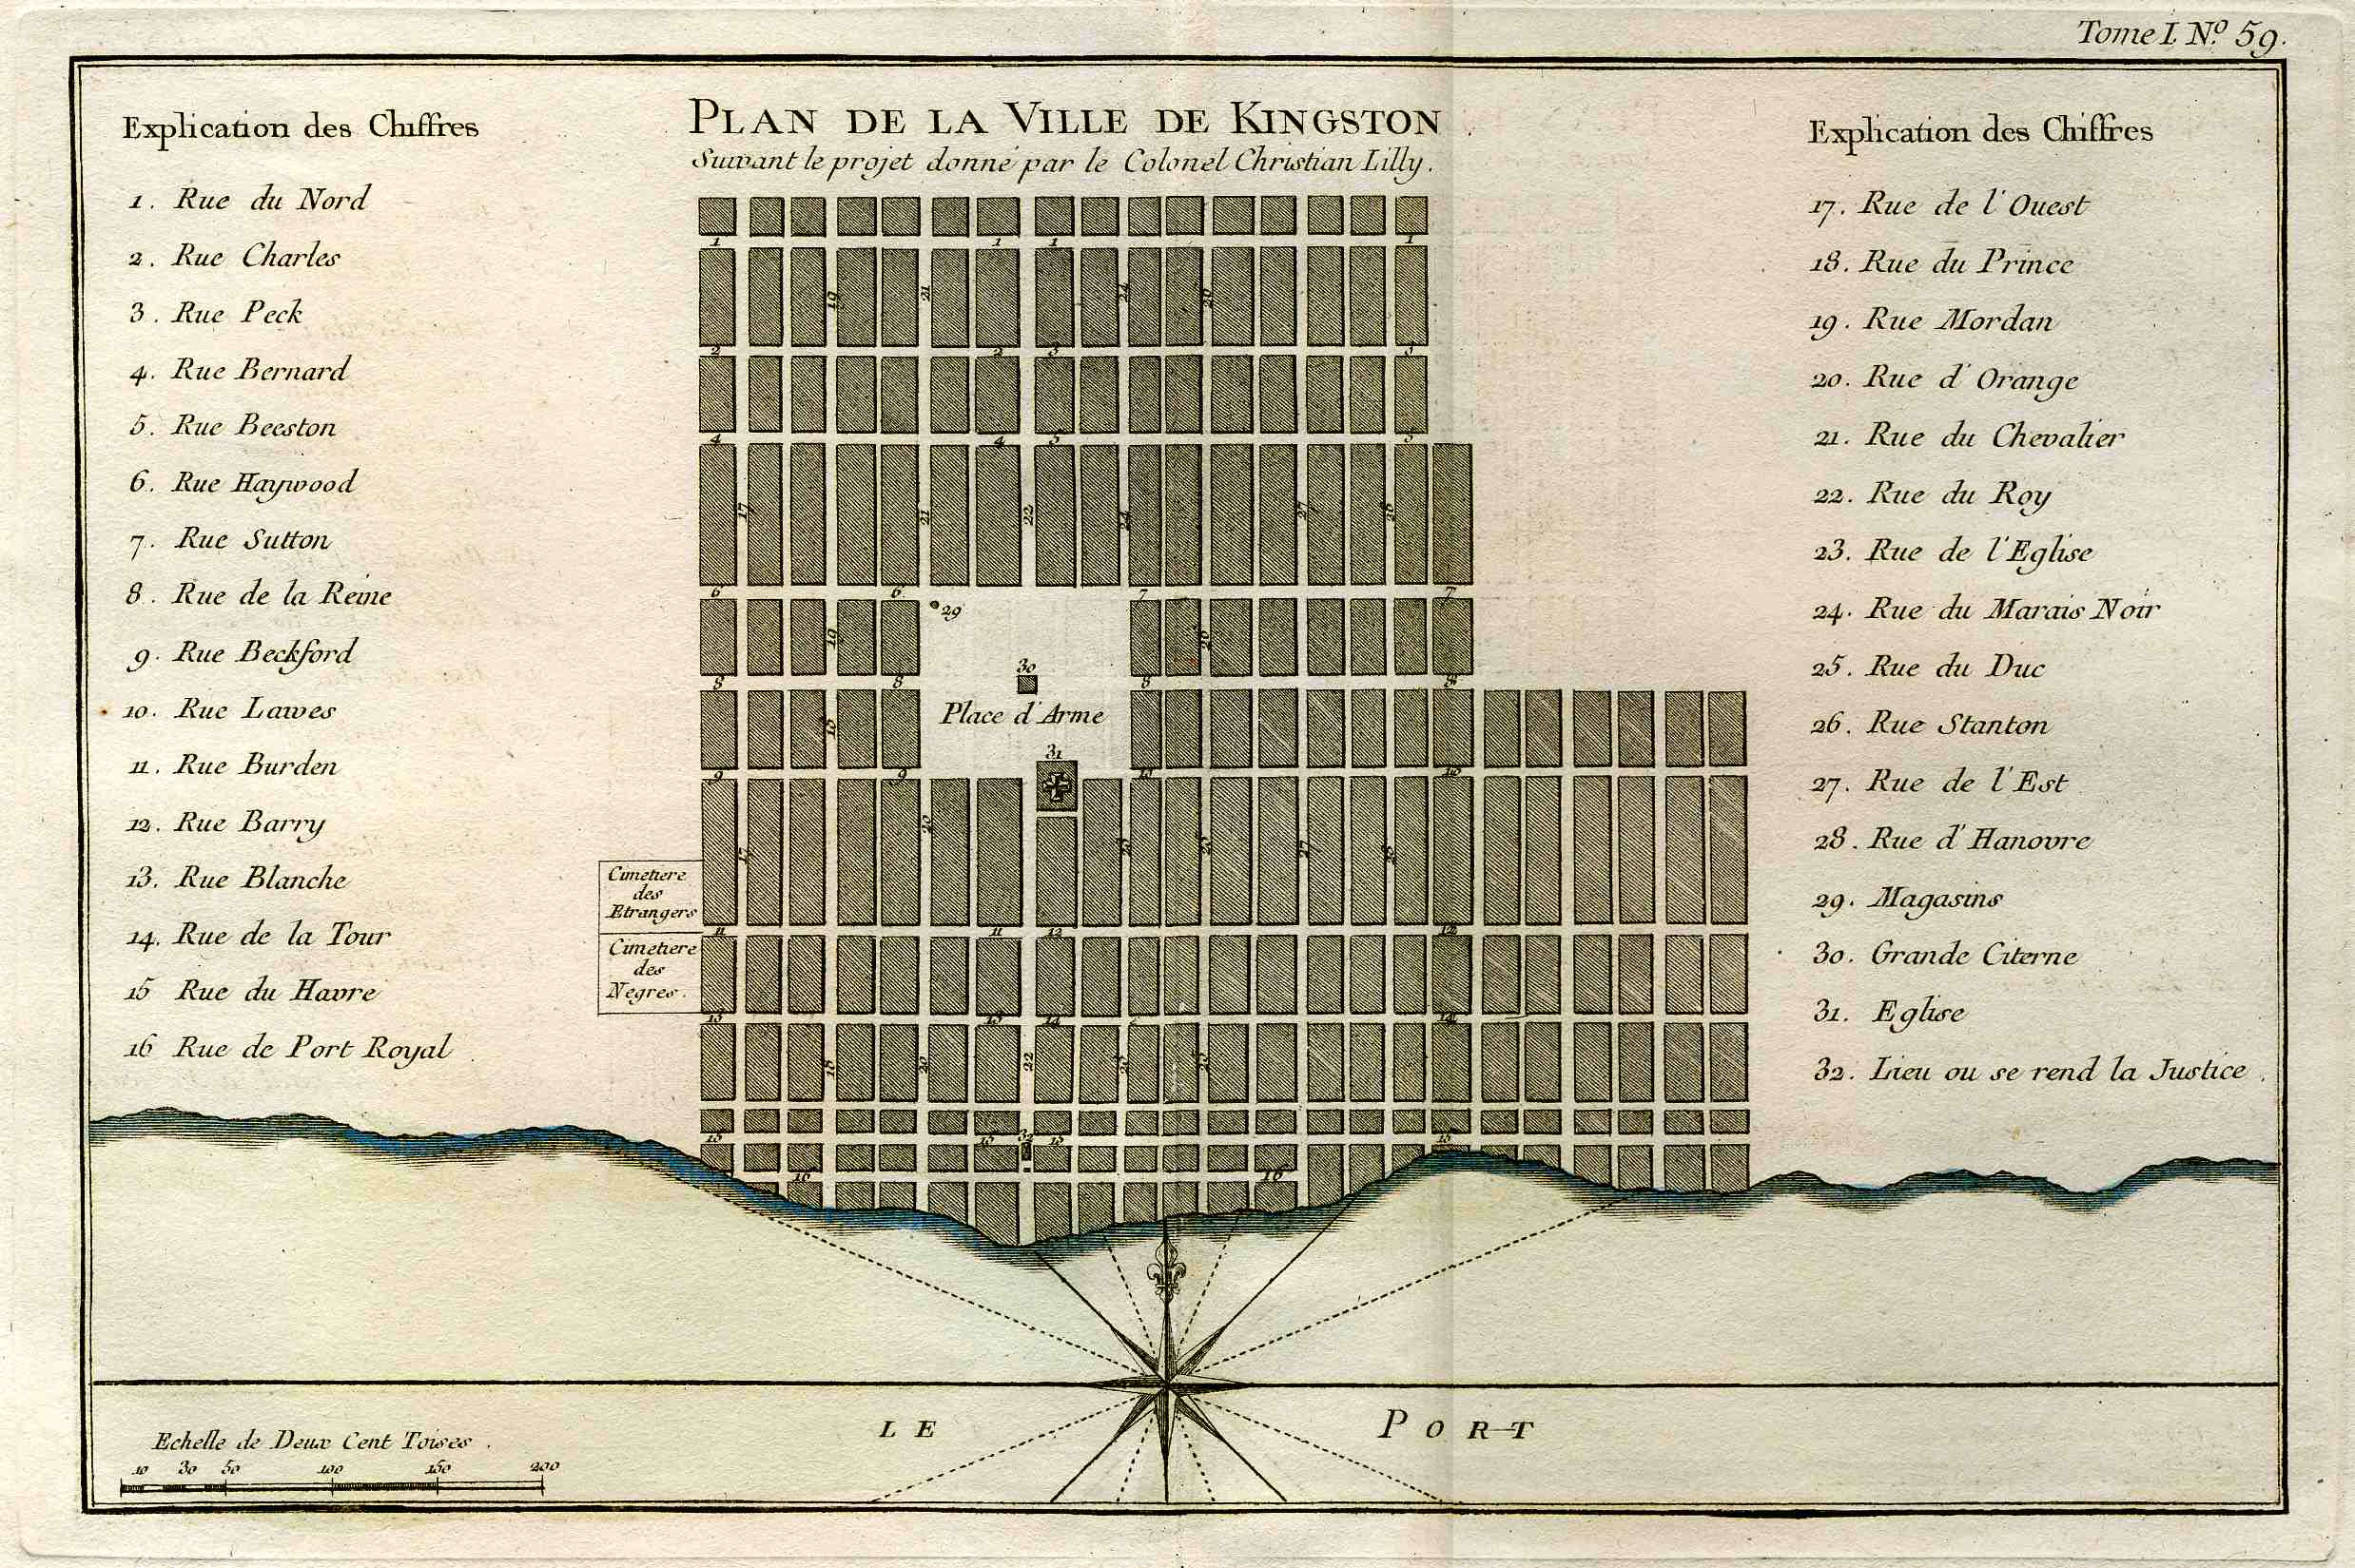 Bellin's Plan de la Ville de Kingston - 1764